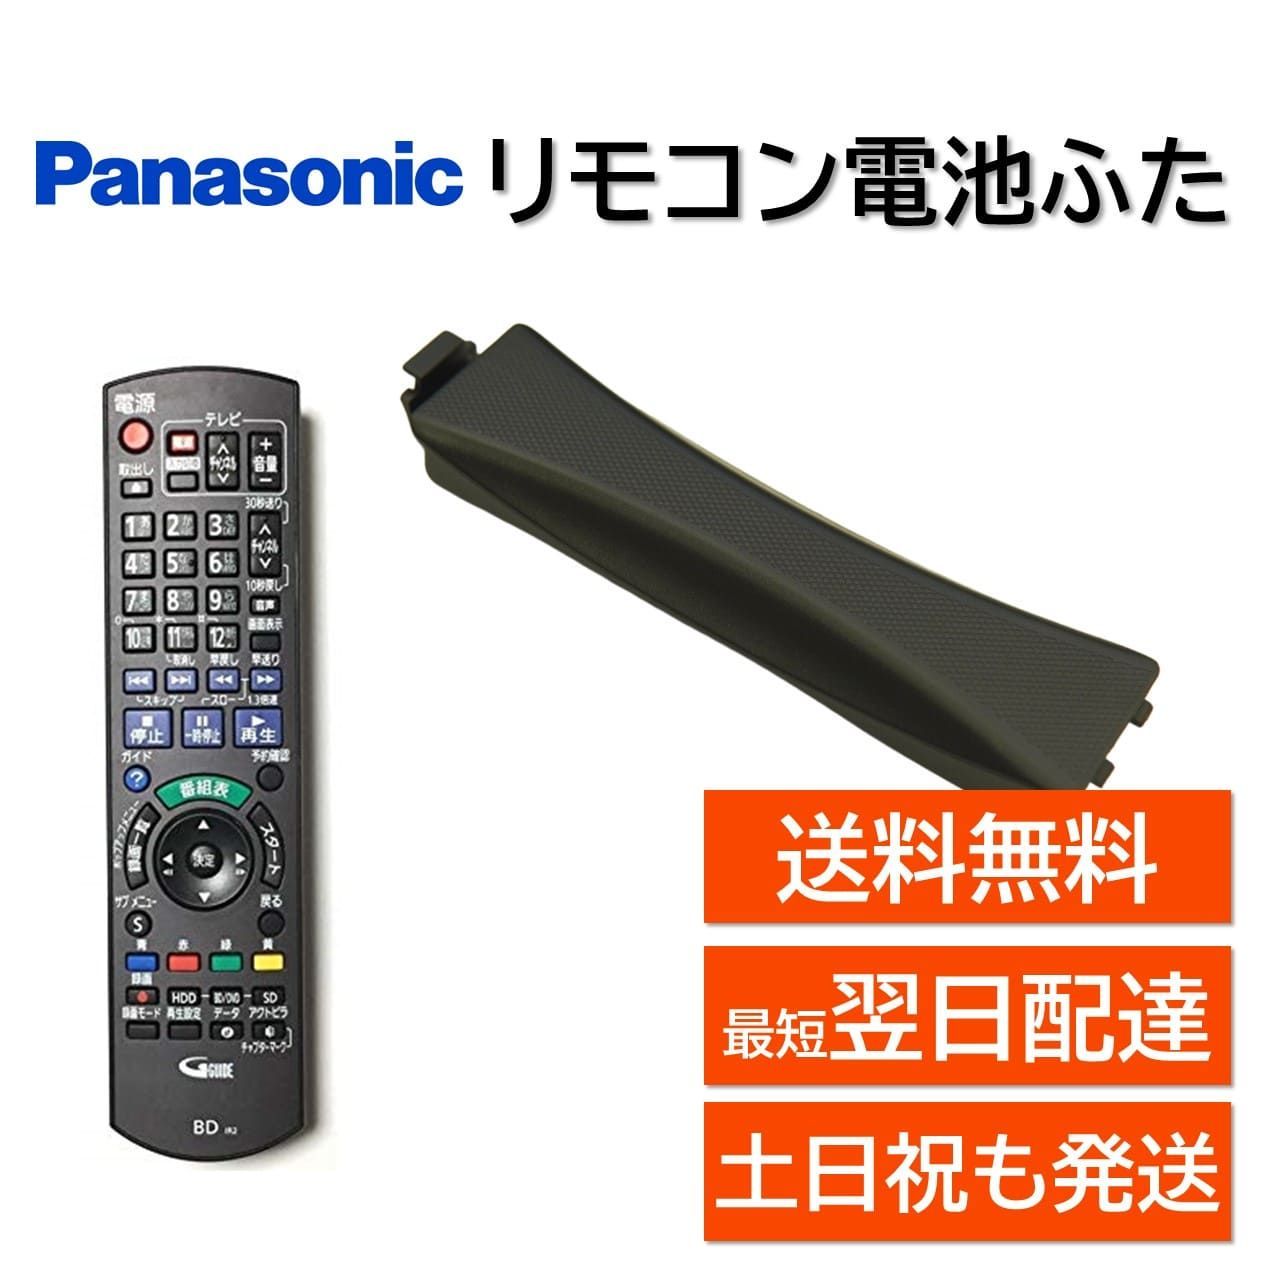 Panasonic ブルーレイディスクレコーダー用リモコン N2QAYB000902 第一 ...